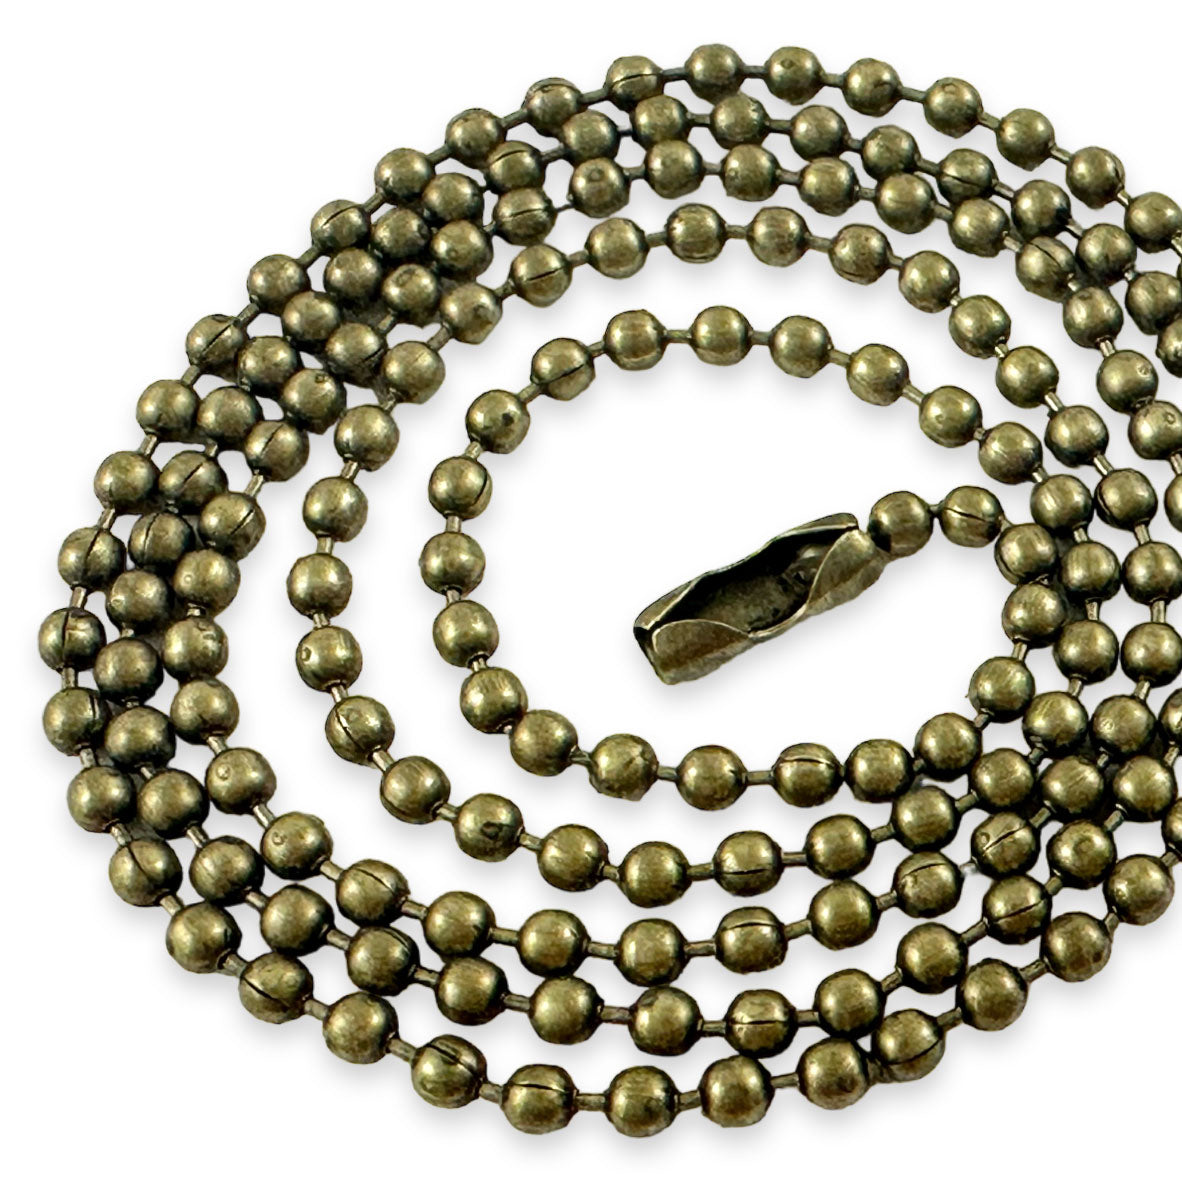 Bulk Antique Bronze Ball Chain Necklaces 24" - Select Quantity